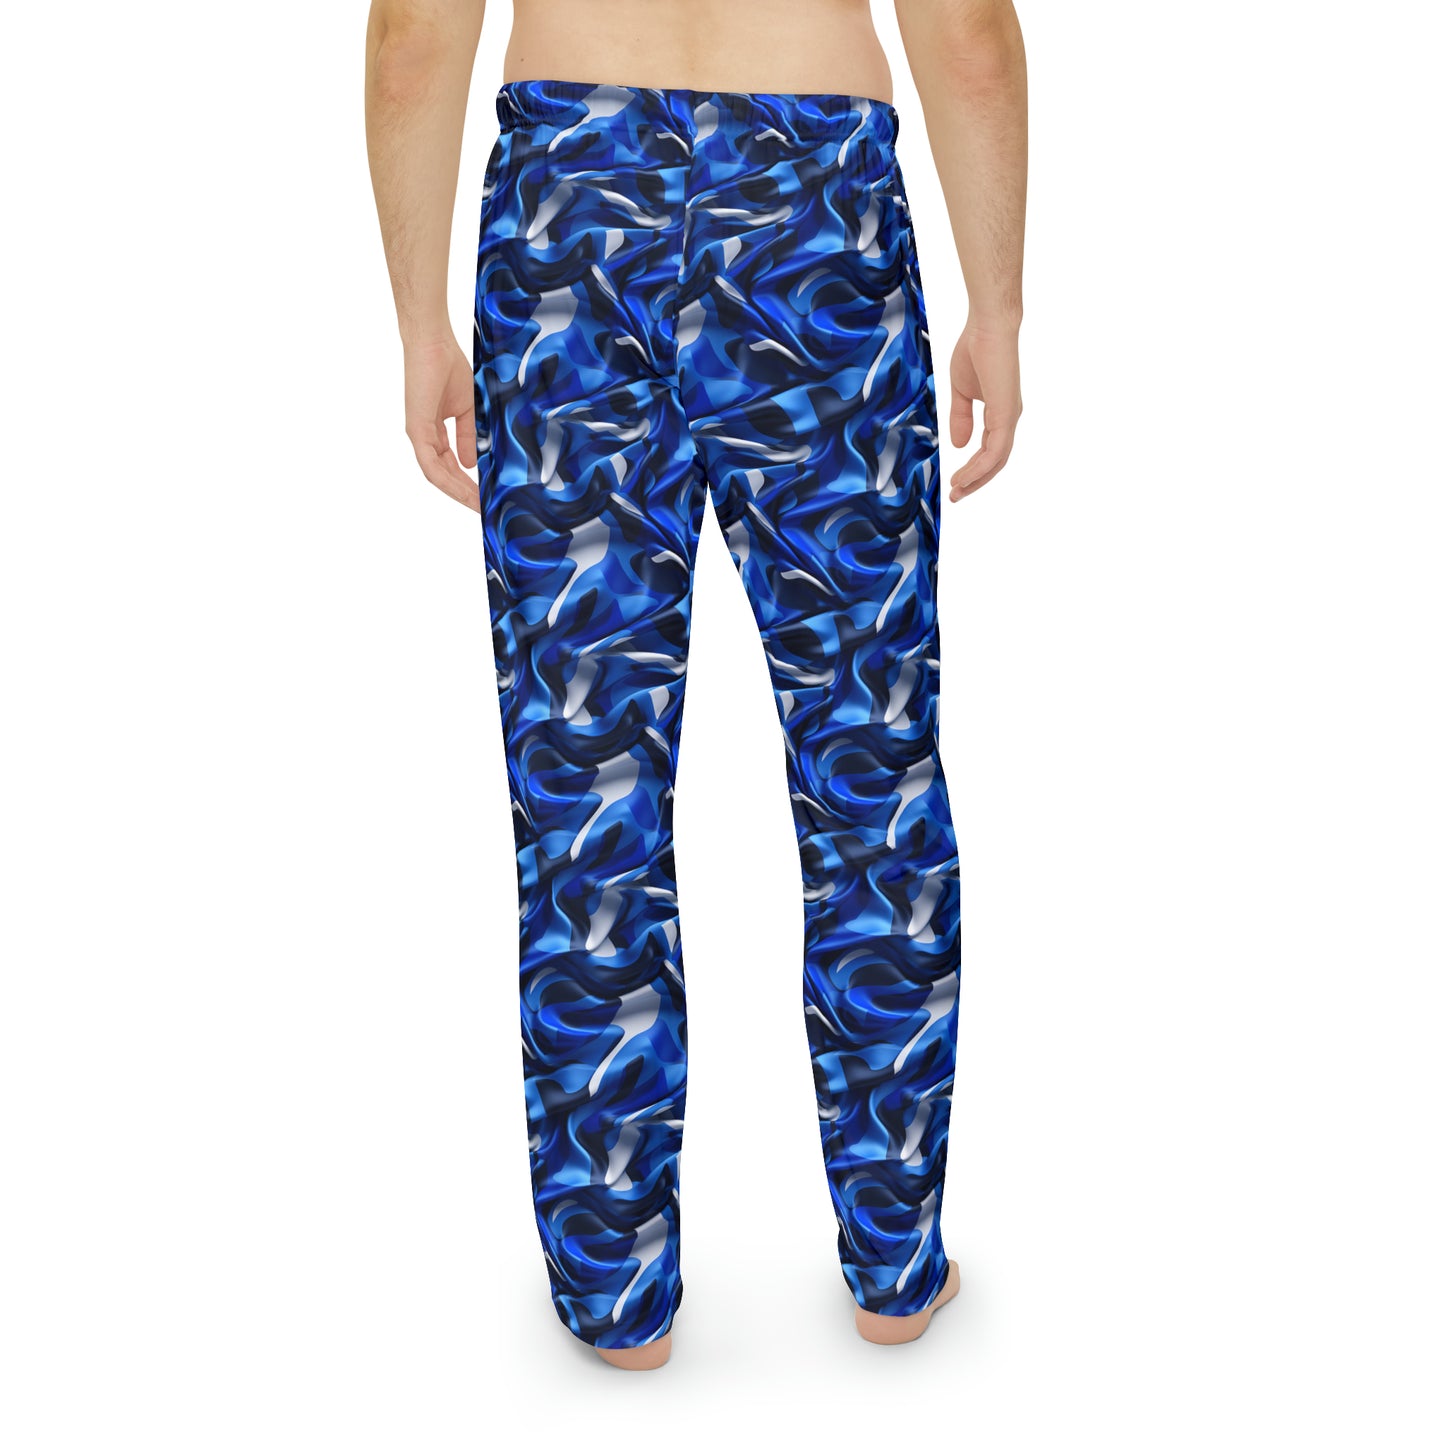 Blue & Grey Satin Camo Men's Pajama Pants